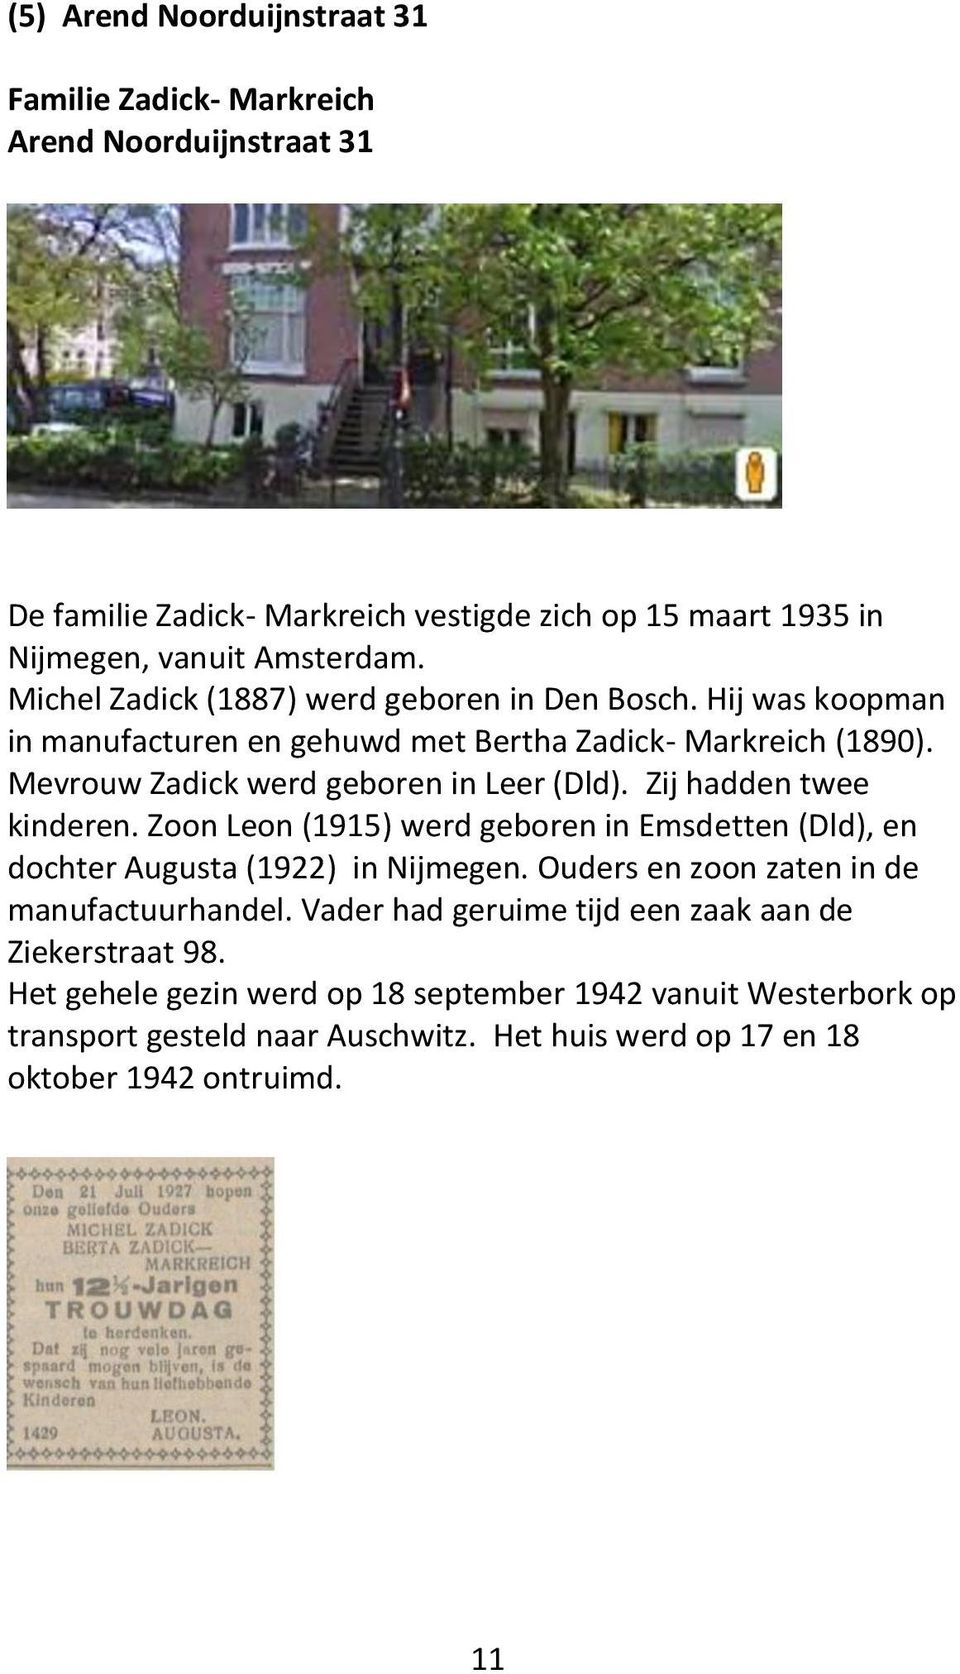 Zij hadden twee kinderen. Zoon Leon (1915) werd geboren in Emsdetten (Dld), en dochter Augusta (1922) in Nijmegen. Ouders en zoon zaten in de manufactuurhandel.